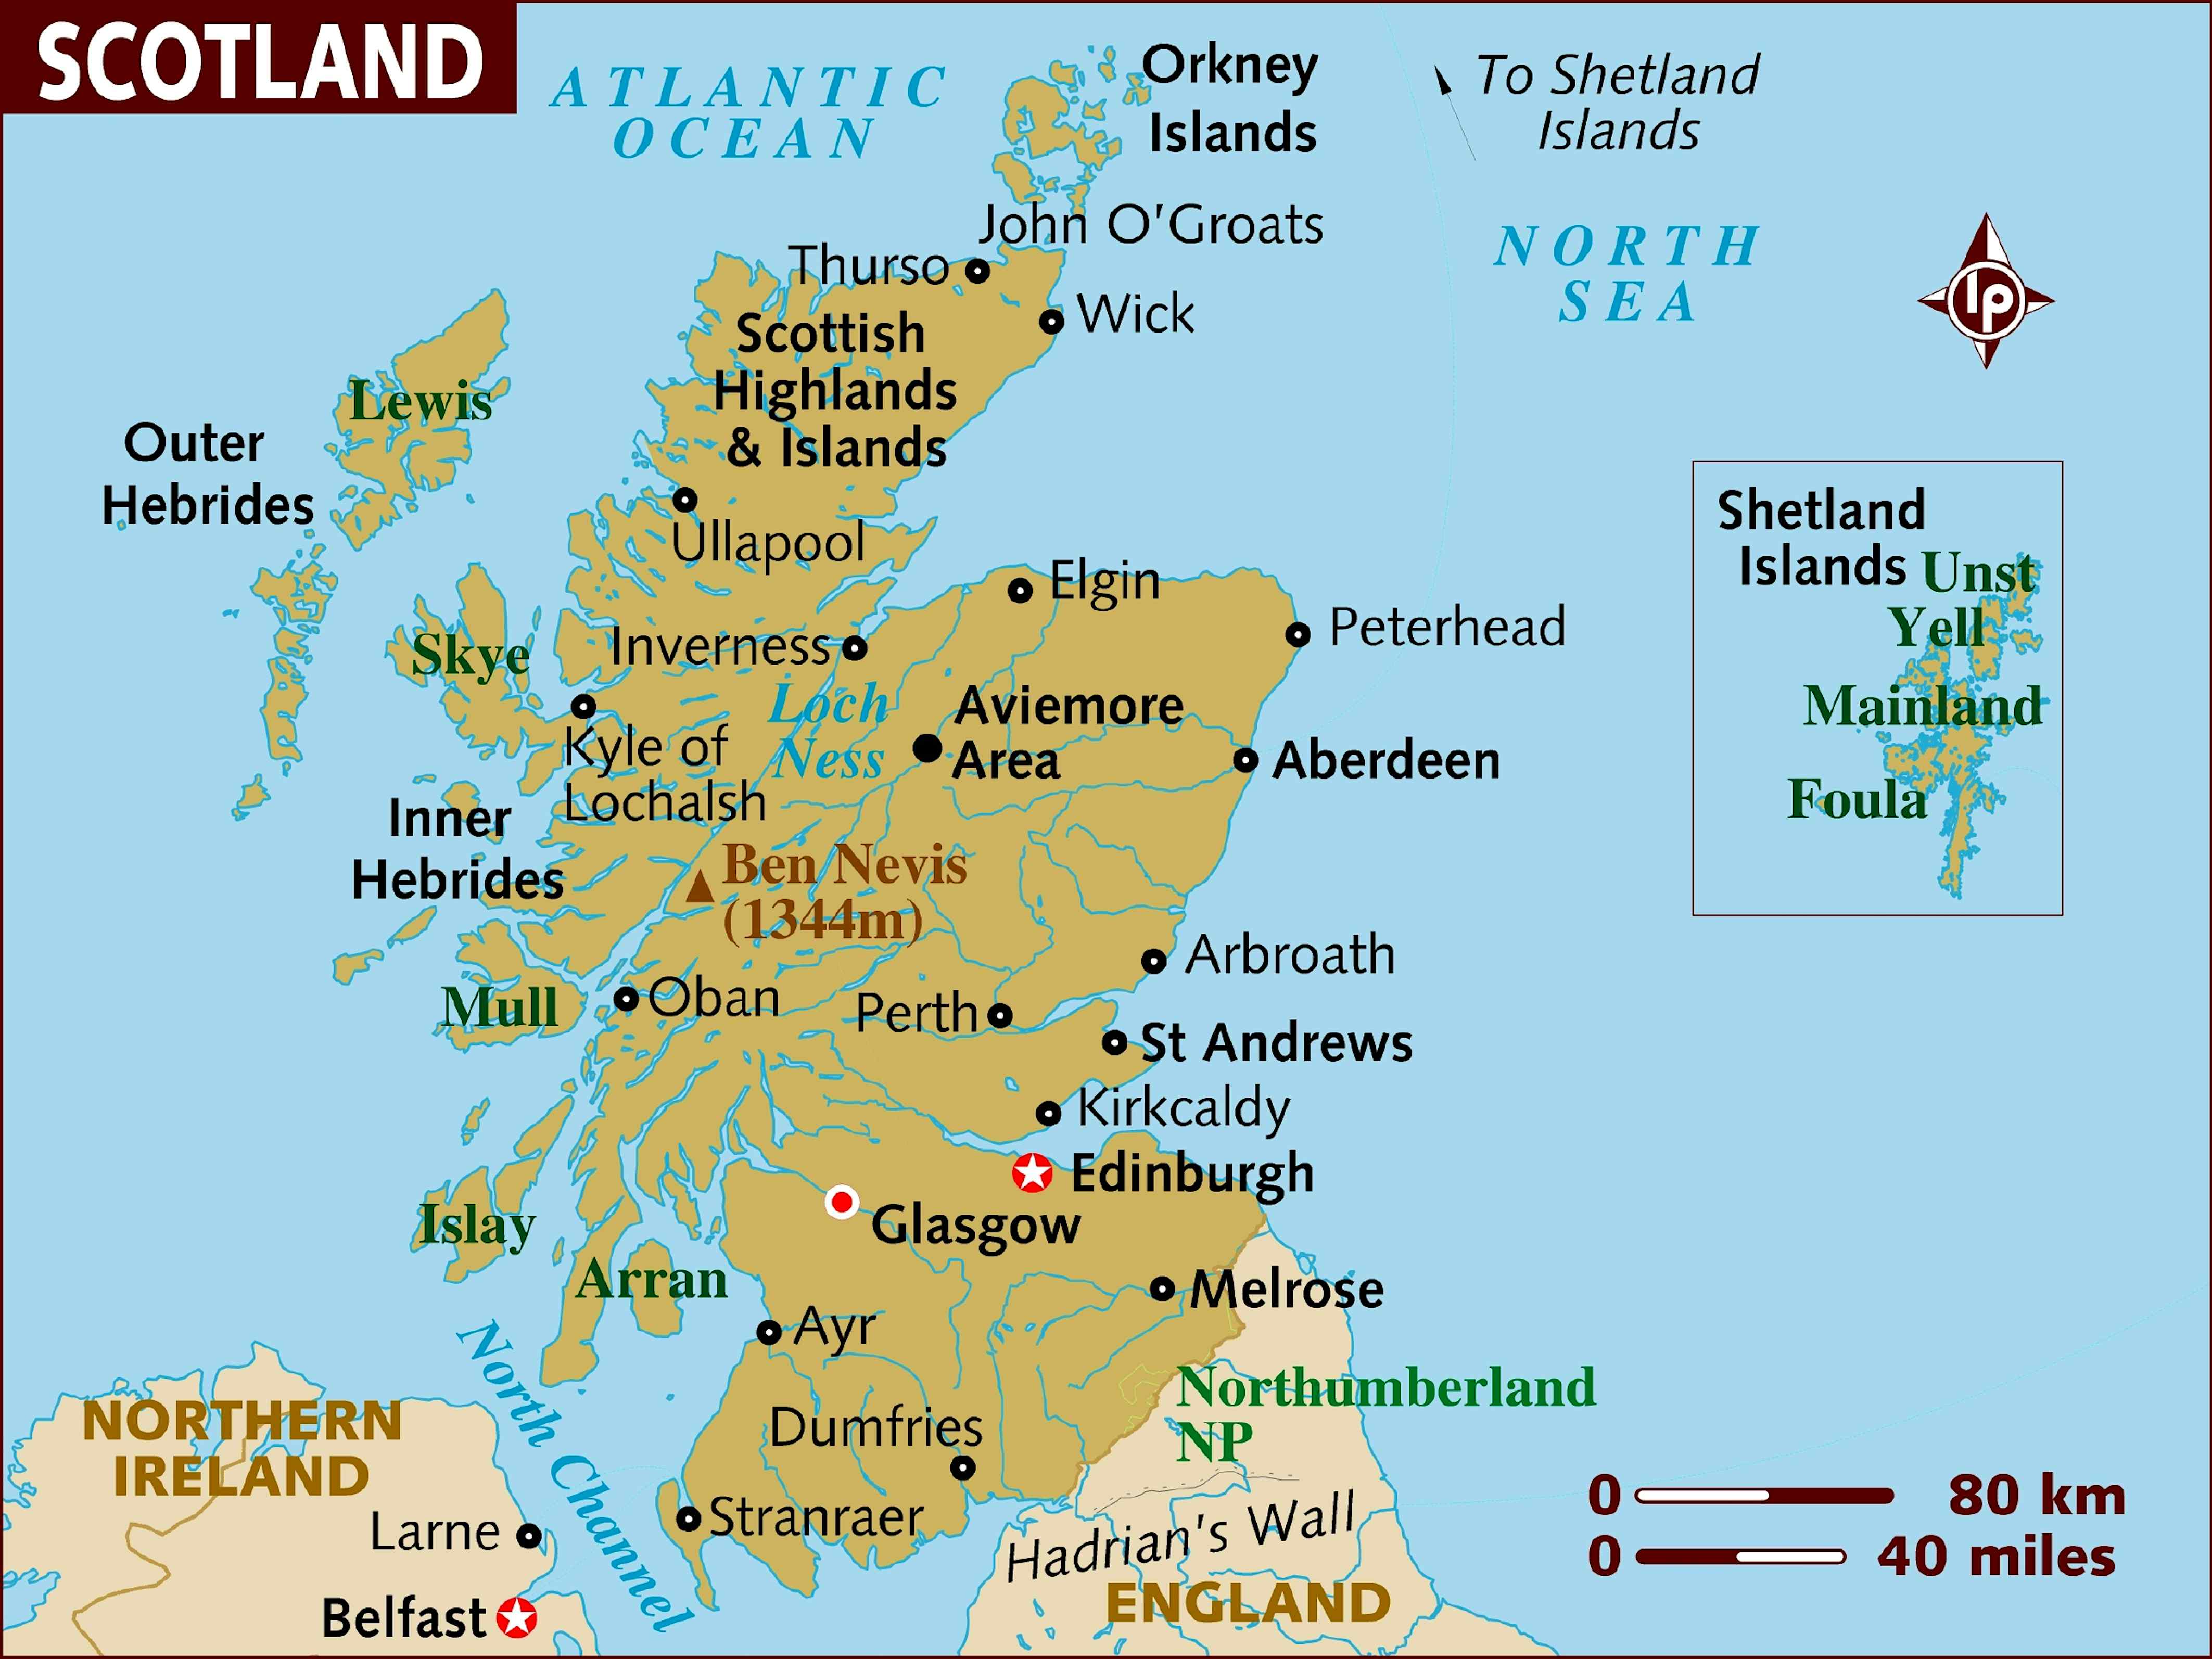 Scotland Map ?auto=format&fit=crop&sharp=10&vib=20&ixlib=react 8.6.4&w=850&q=20&dpr=5